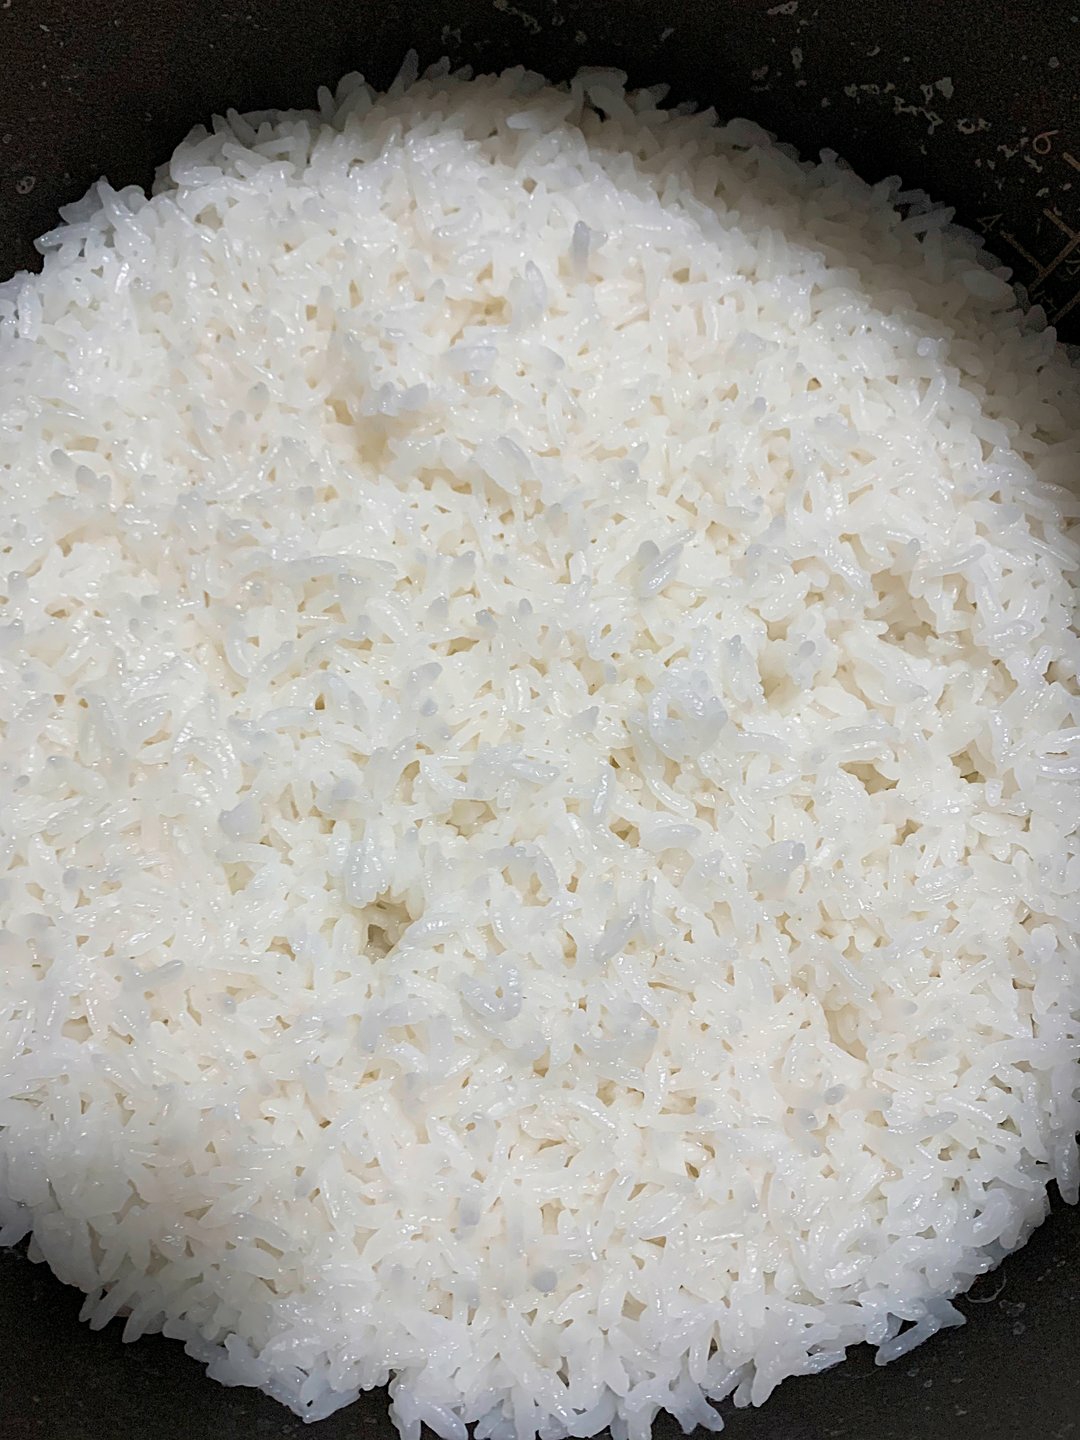 安利皇后锅蒸米饭图片